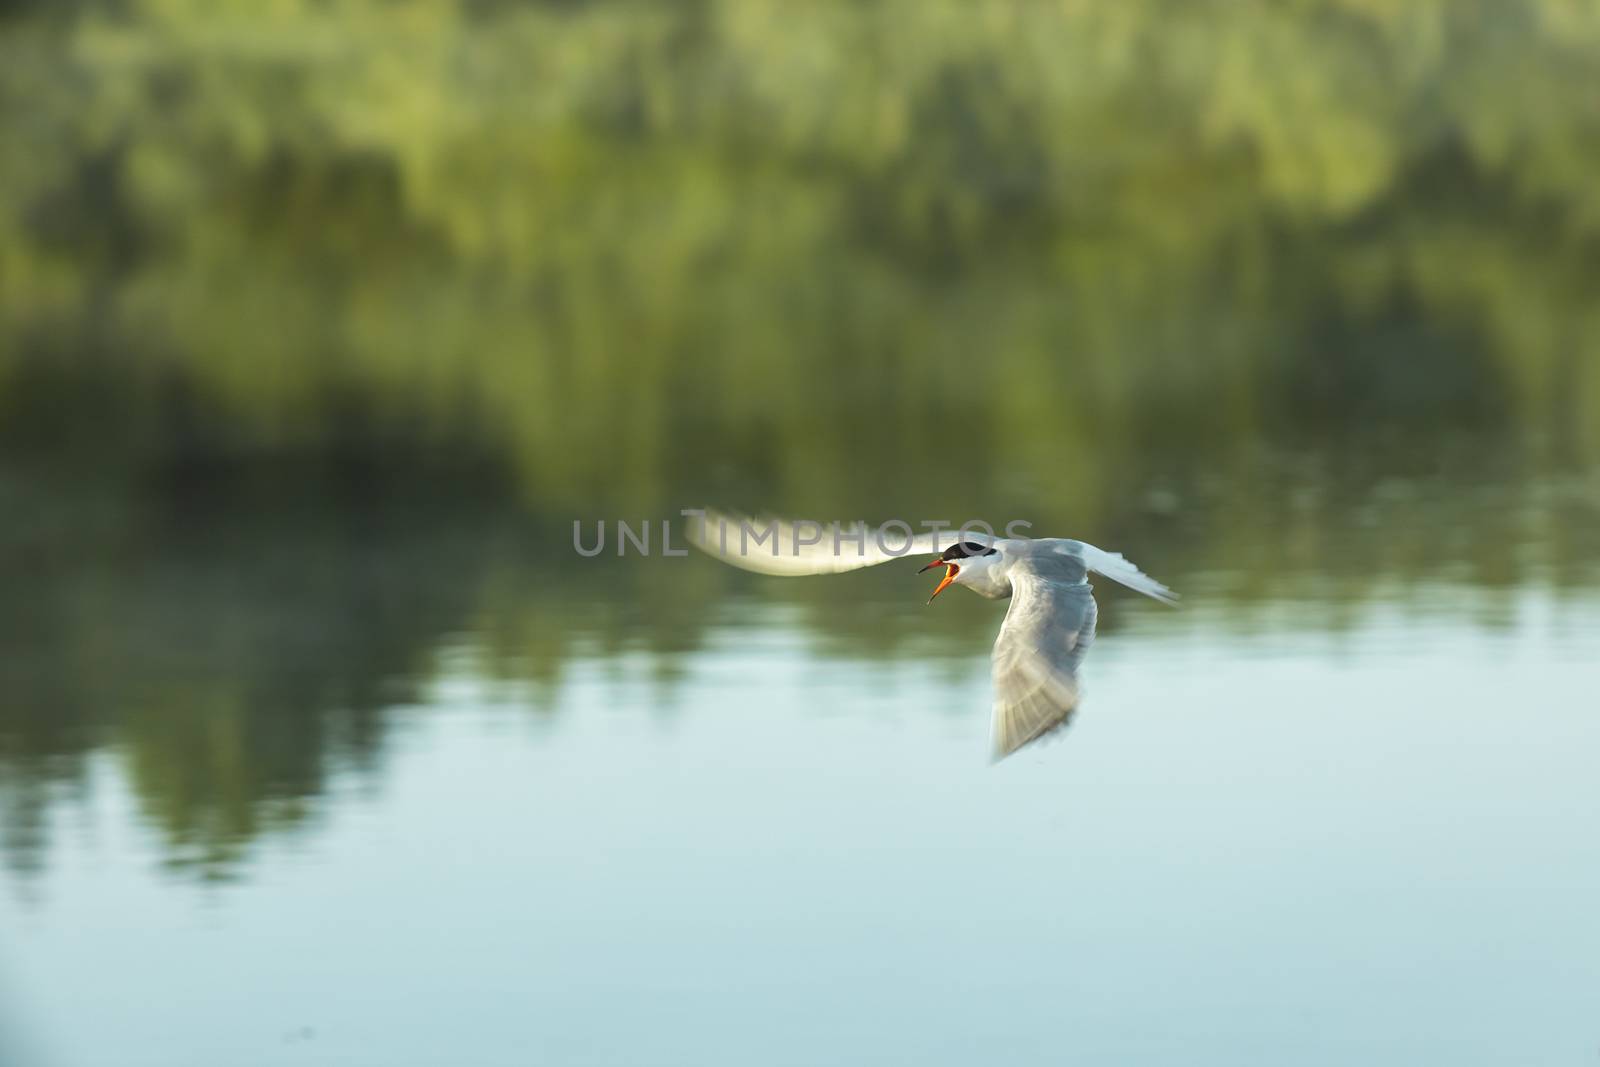 tern bird flies over a pond by sveter